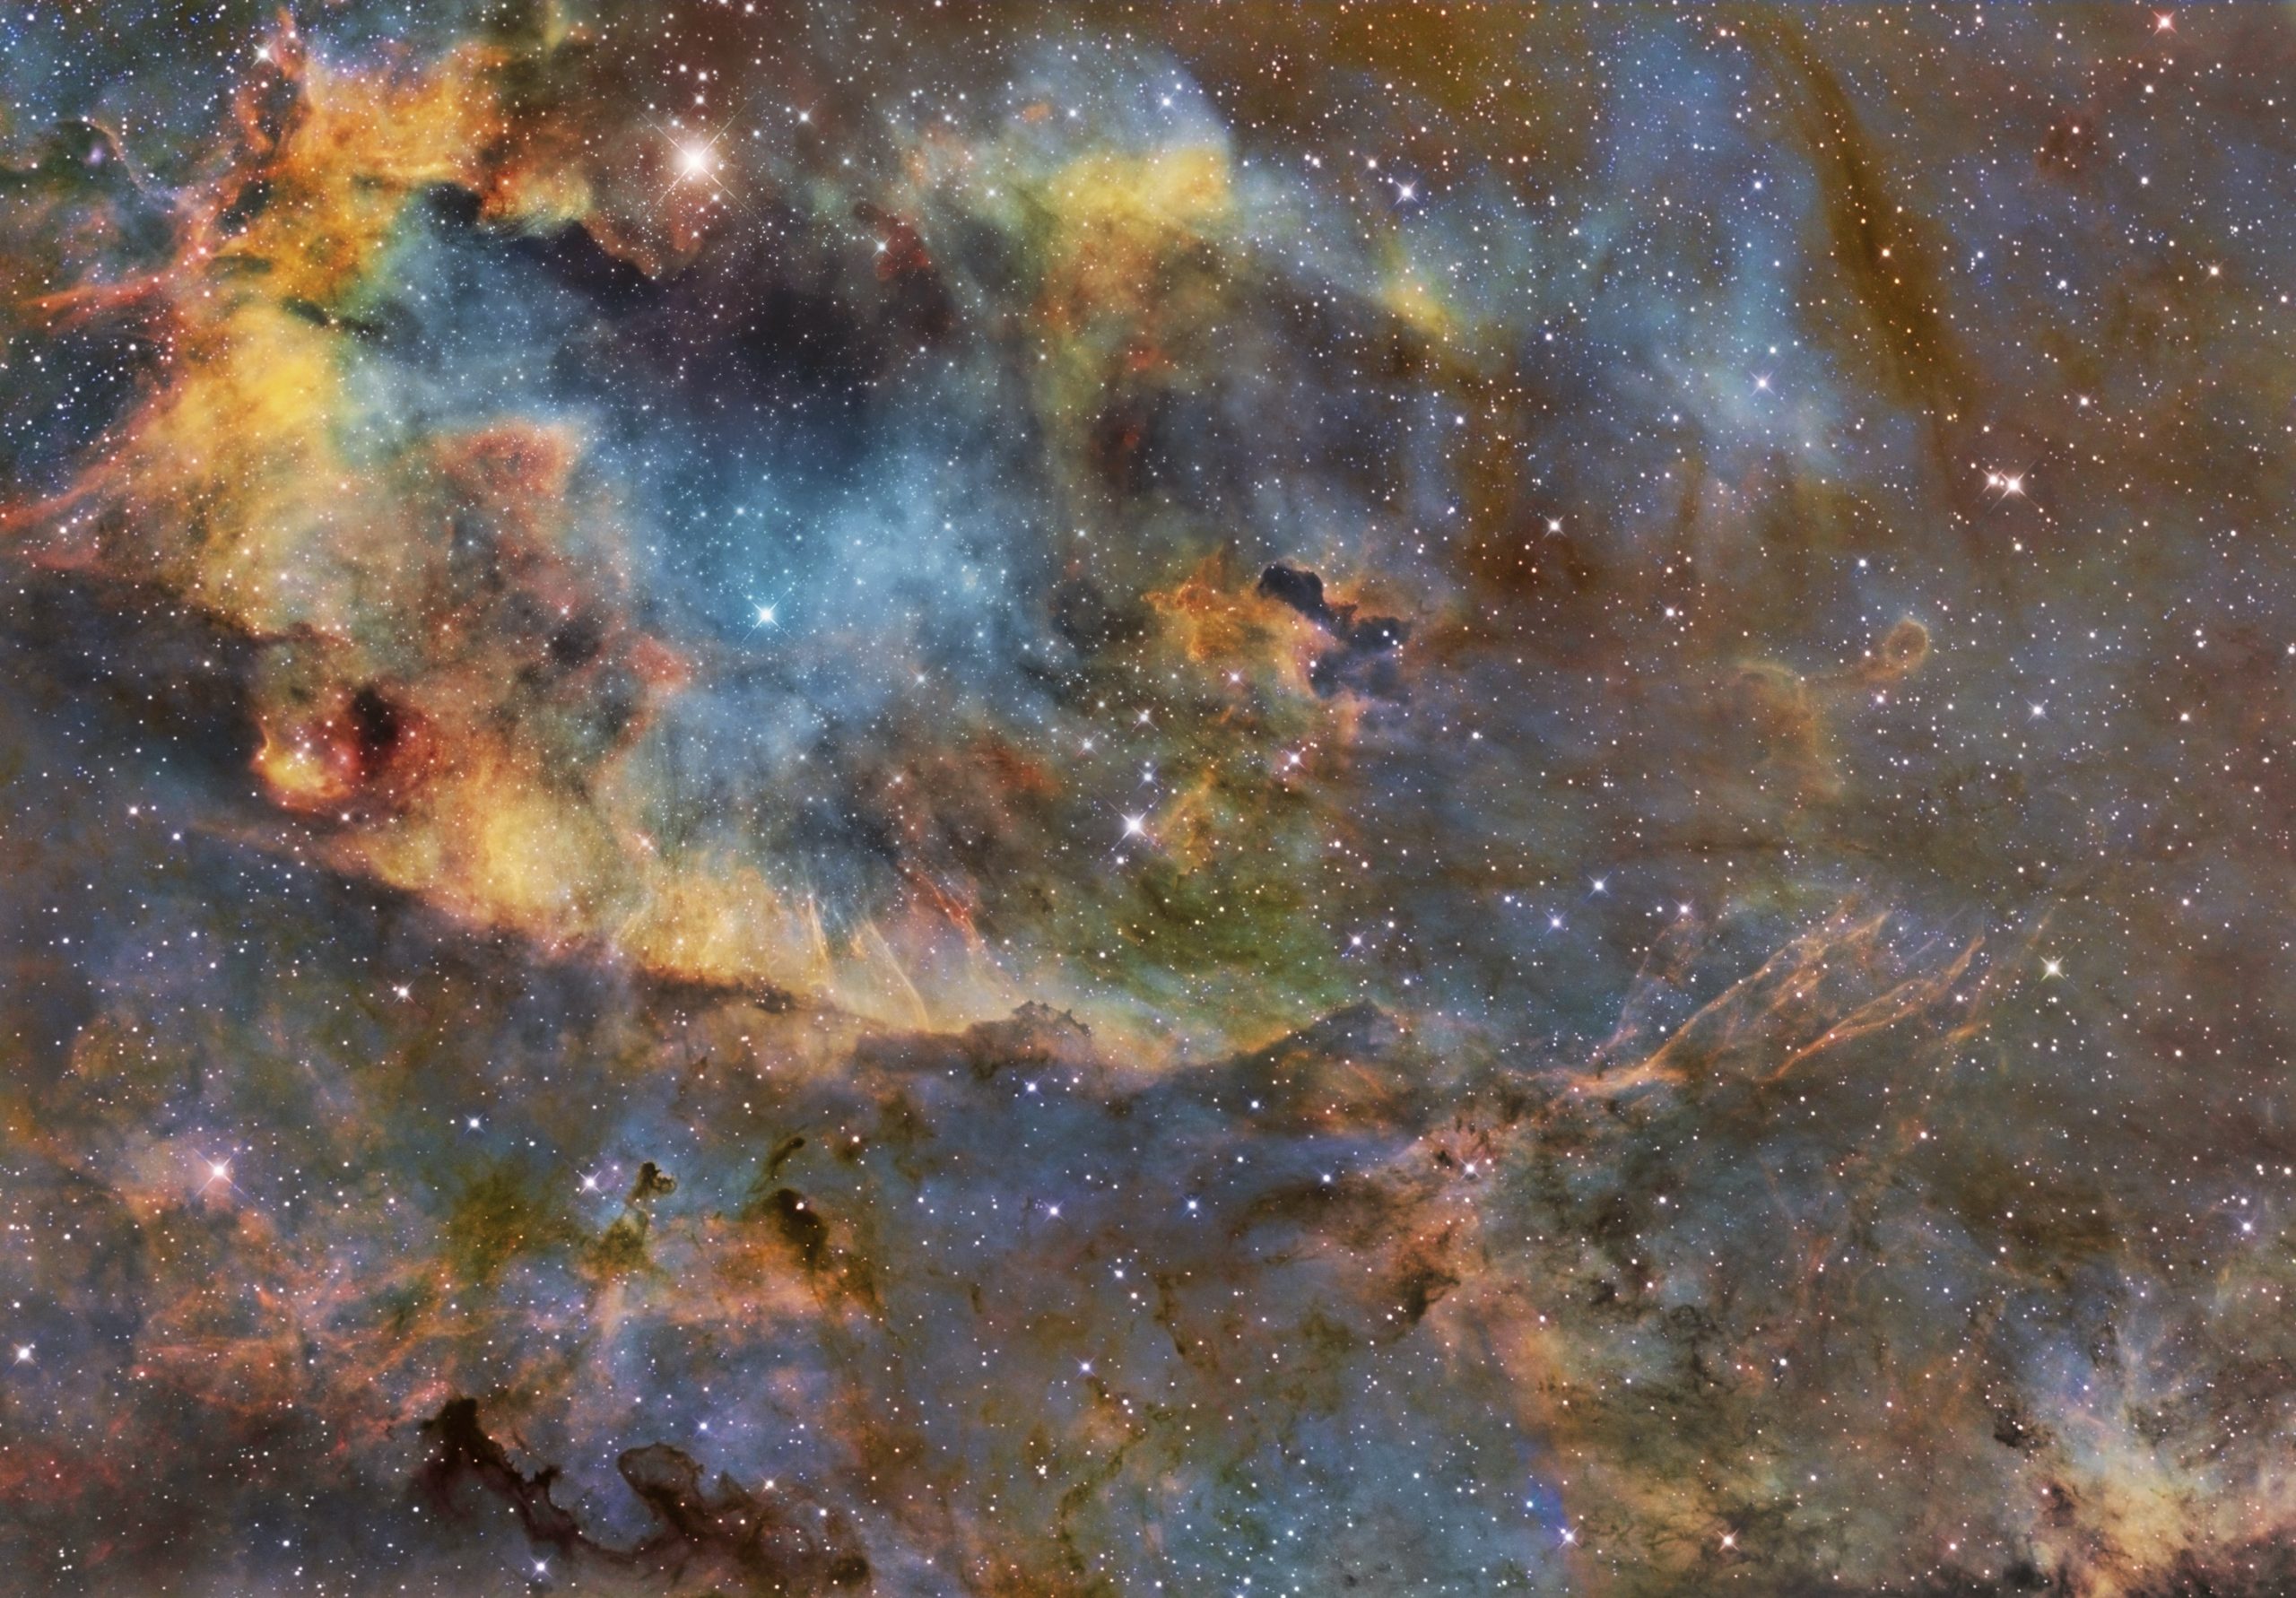 The reflection nebula vdB 130